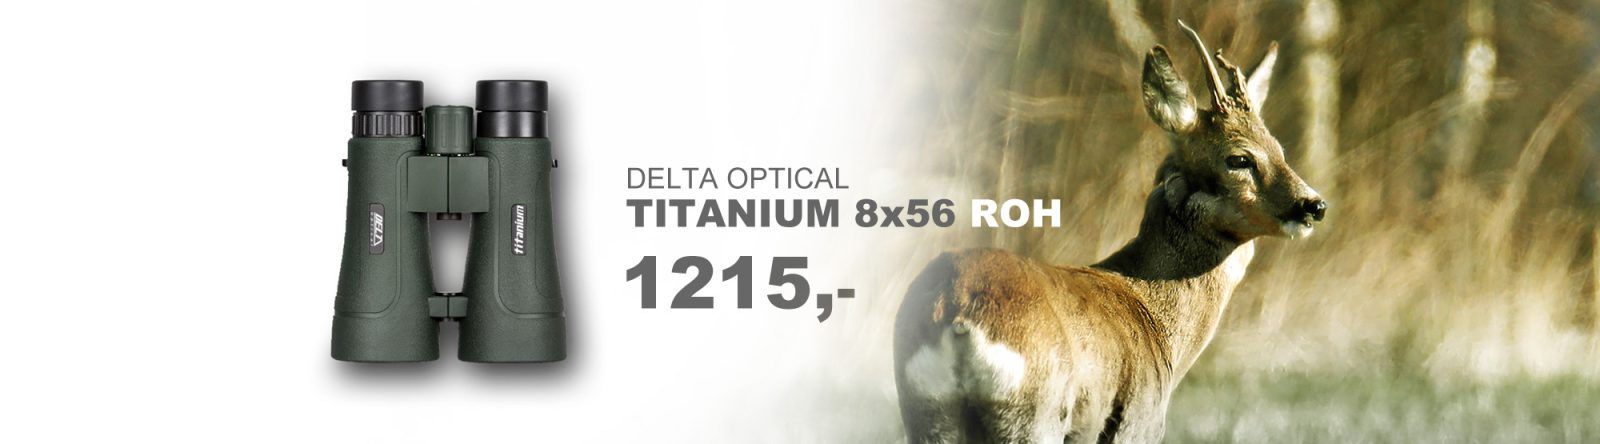 delta_titanium_8x56_ROH-baner1a (1)